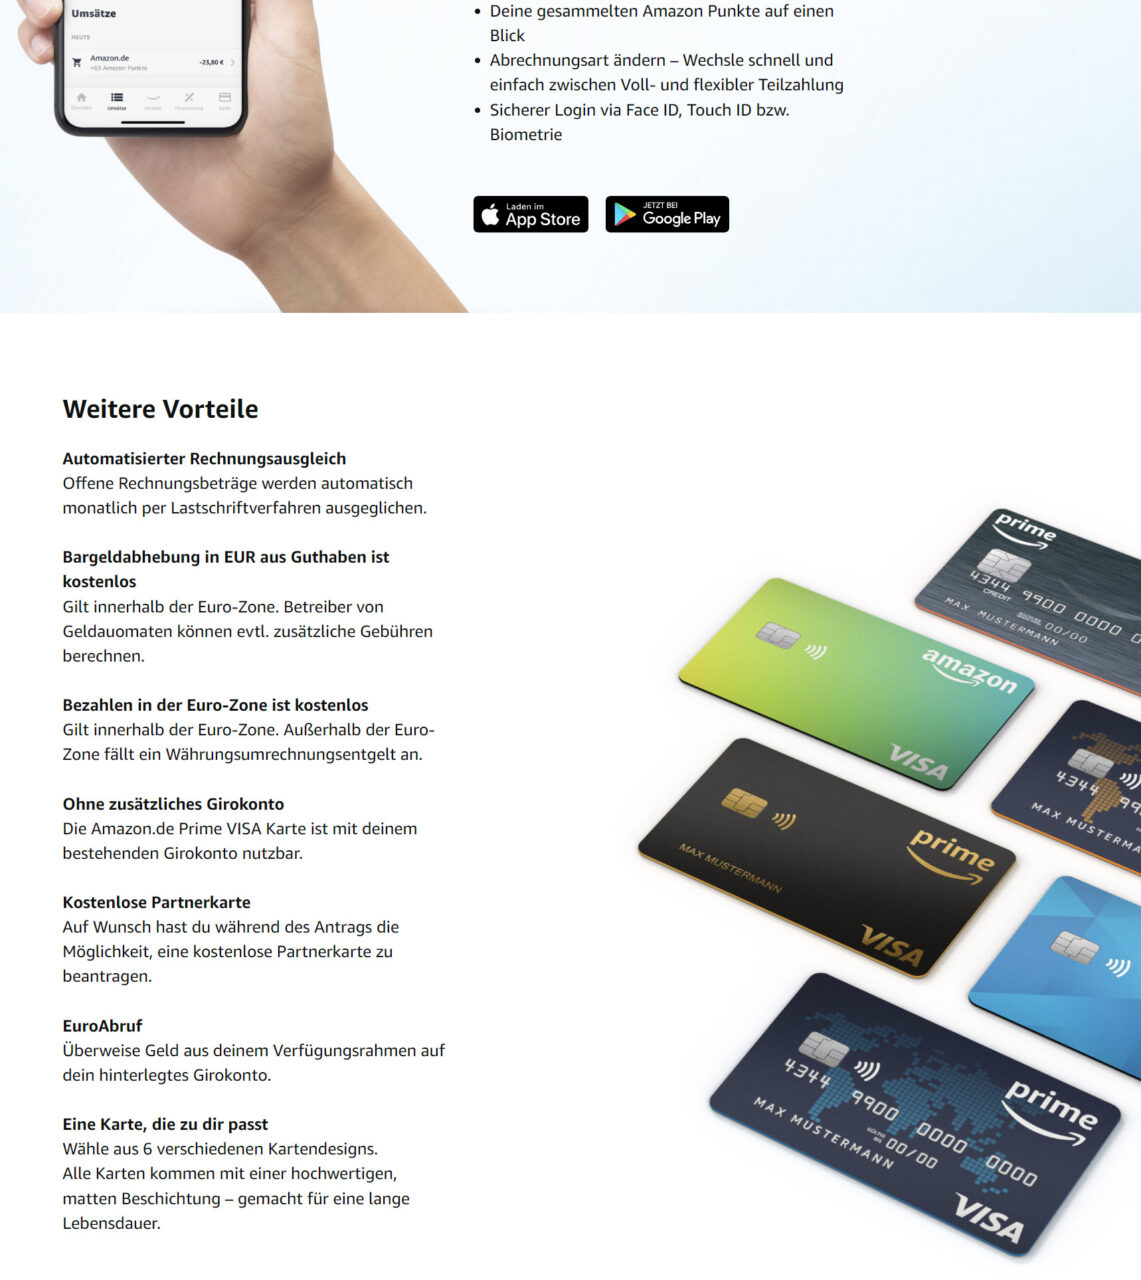 Die Amazon Kreditkarten (Amazon Prima VISA) werden mit verschiedenen Vorteilen wie Cashback sowie günstigen Konditionen für Prime-Mitglieder beworben